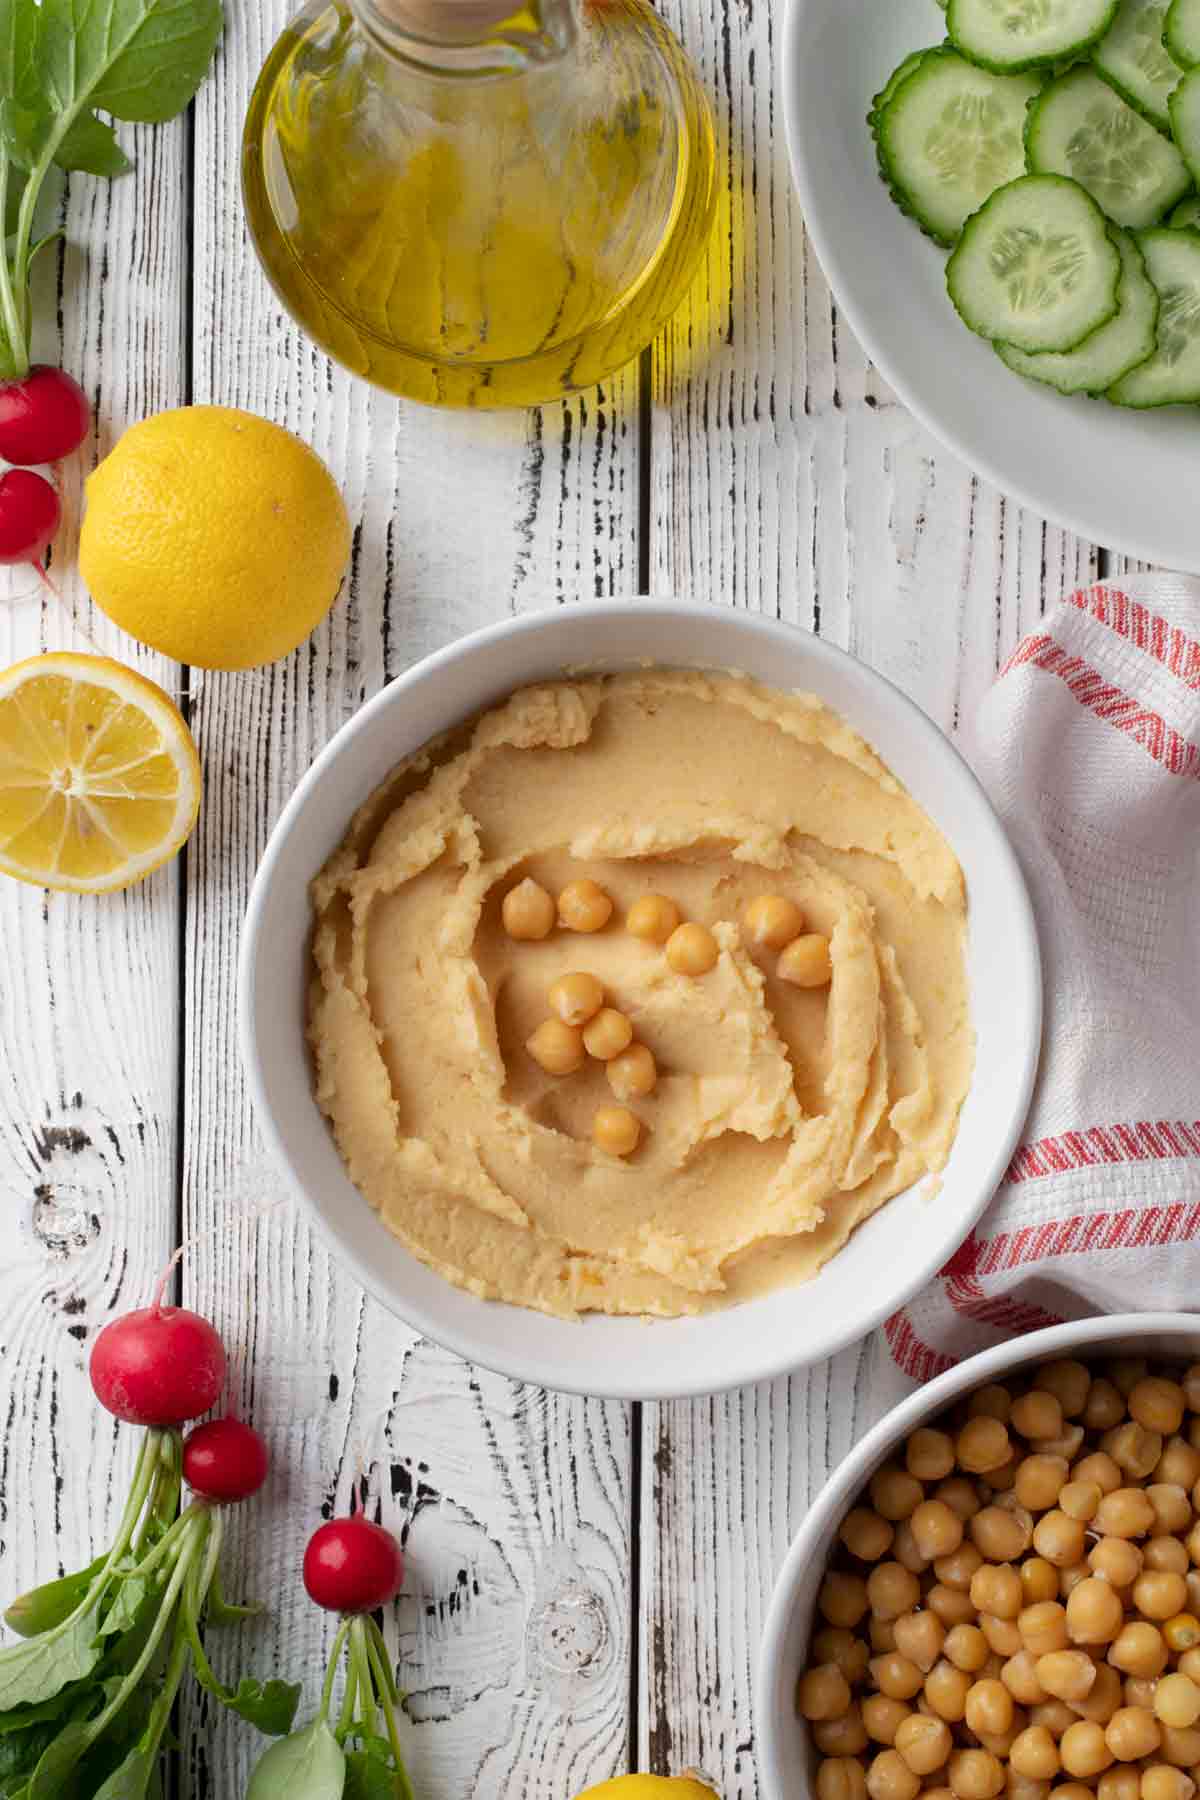 Homemade Hummus - with chickpeas, lemon, tahini sauce, olive oil